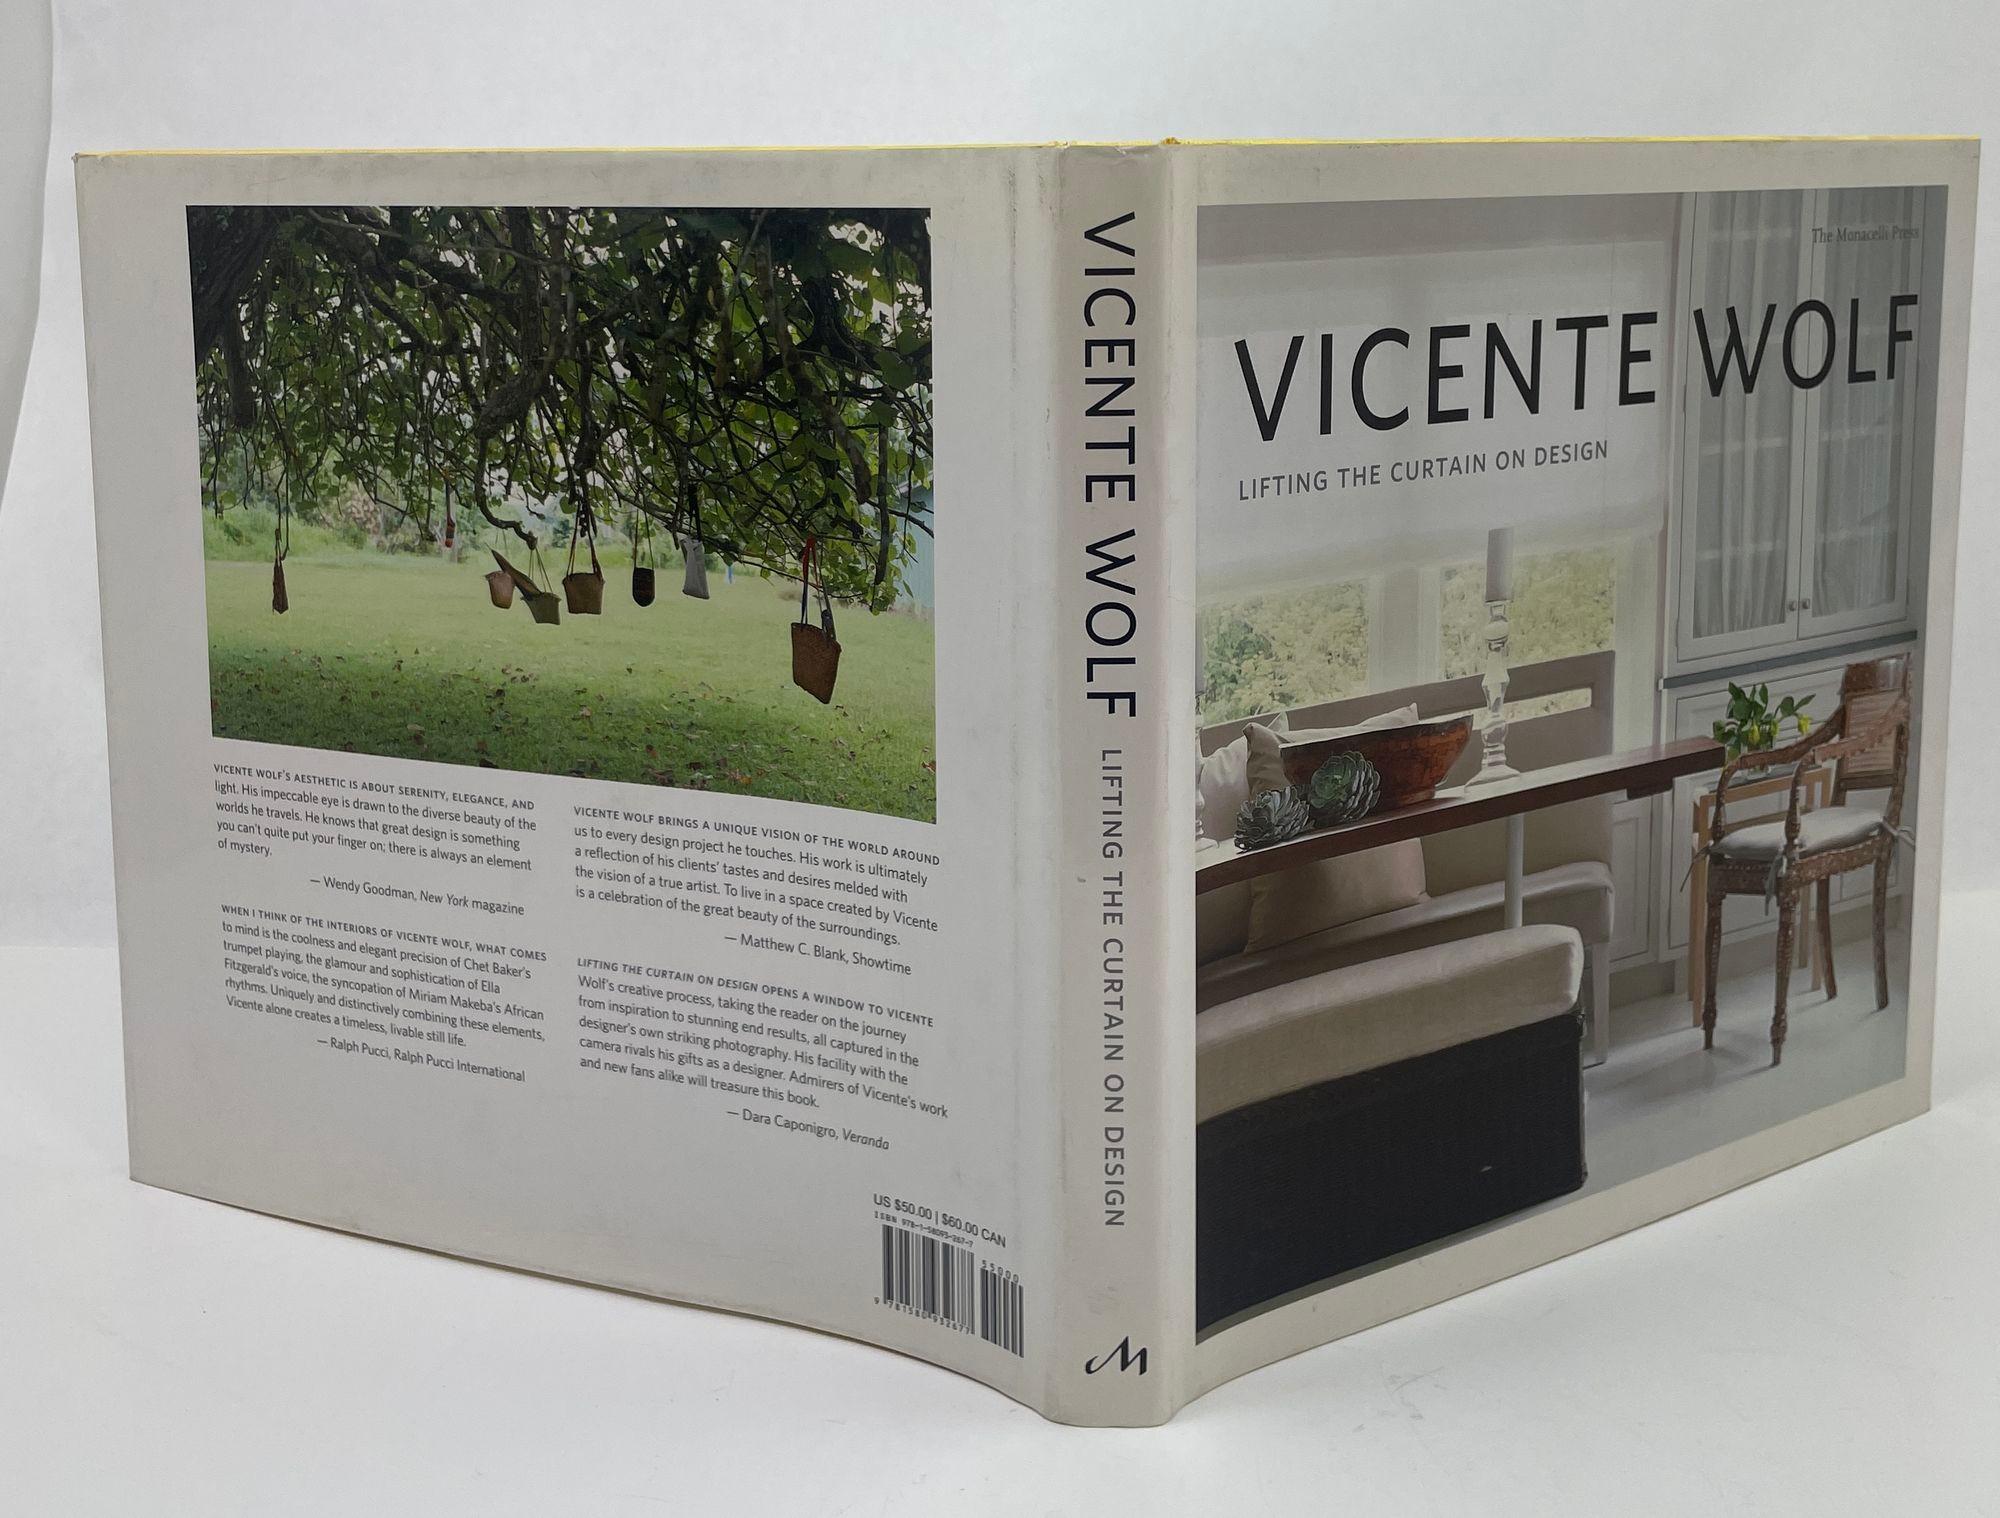 Vorhang auf für Design/One Hardcover 2010 von Vicente Wolf.
Vereinfachen, Verbinden, Erweitern. Diese Prinzipien, die alle grundlegend für die Praxis des Designs sind, bilden den Rahmen für das fesselnde neue Buch des Innenarchitekten Vicente Wolf.